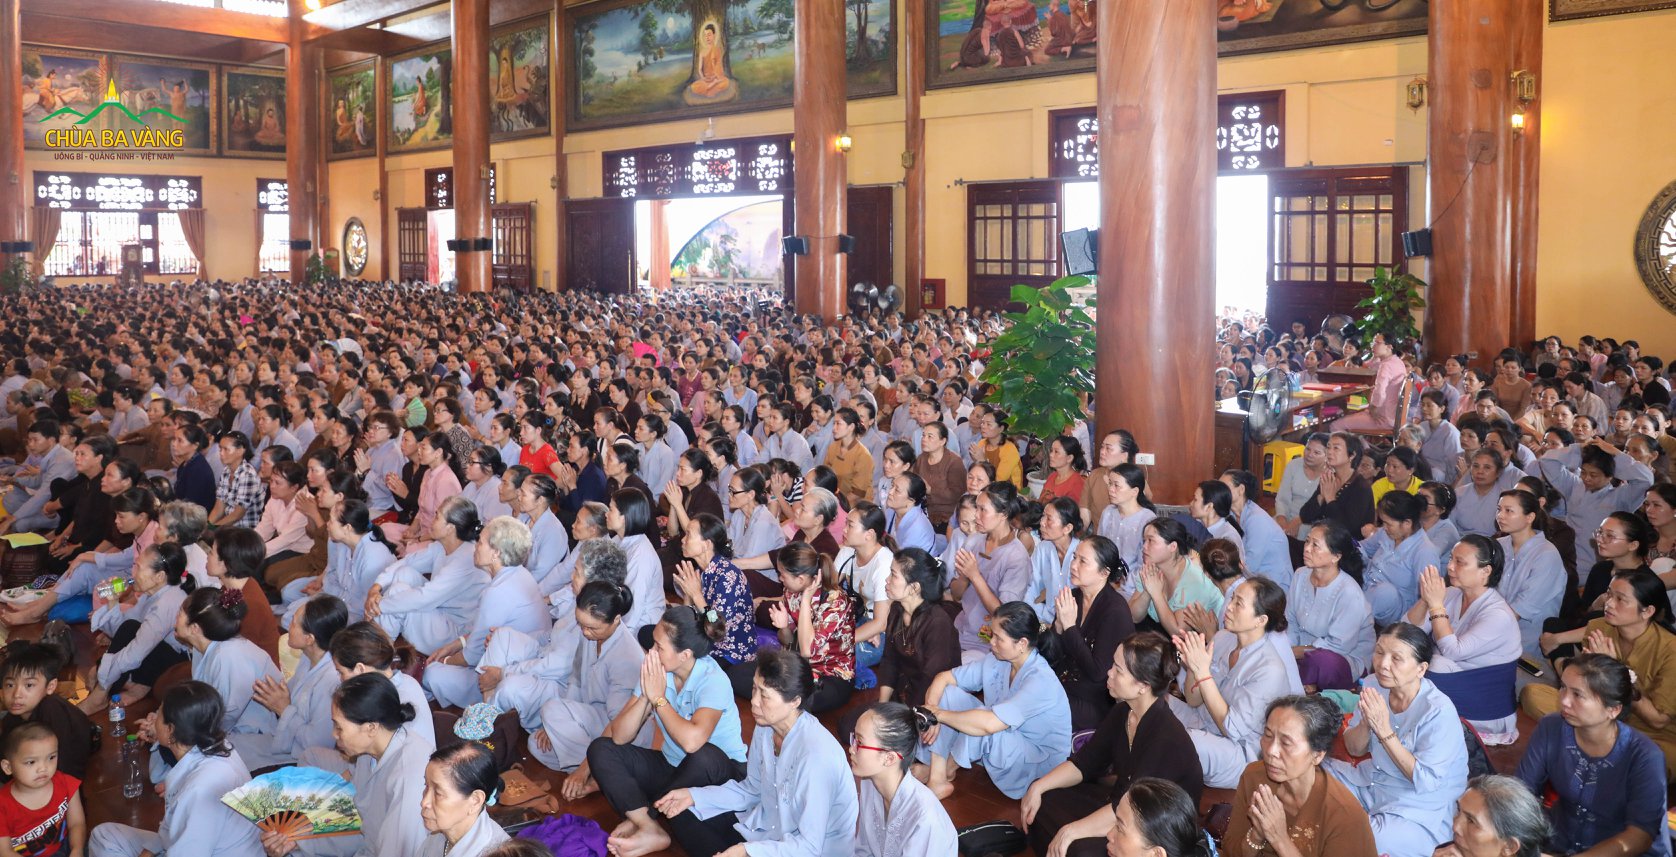 Hàng ngàn Phật tử trang nghiêm tham dự lễ cầu siêu vong linh thai nhi chùa Ba Vàng năm 2019